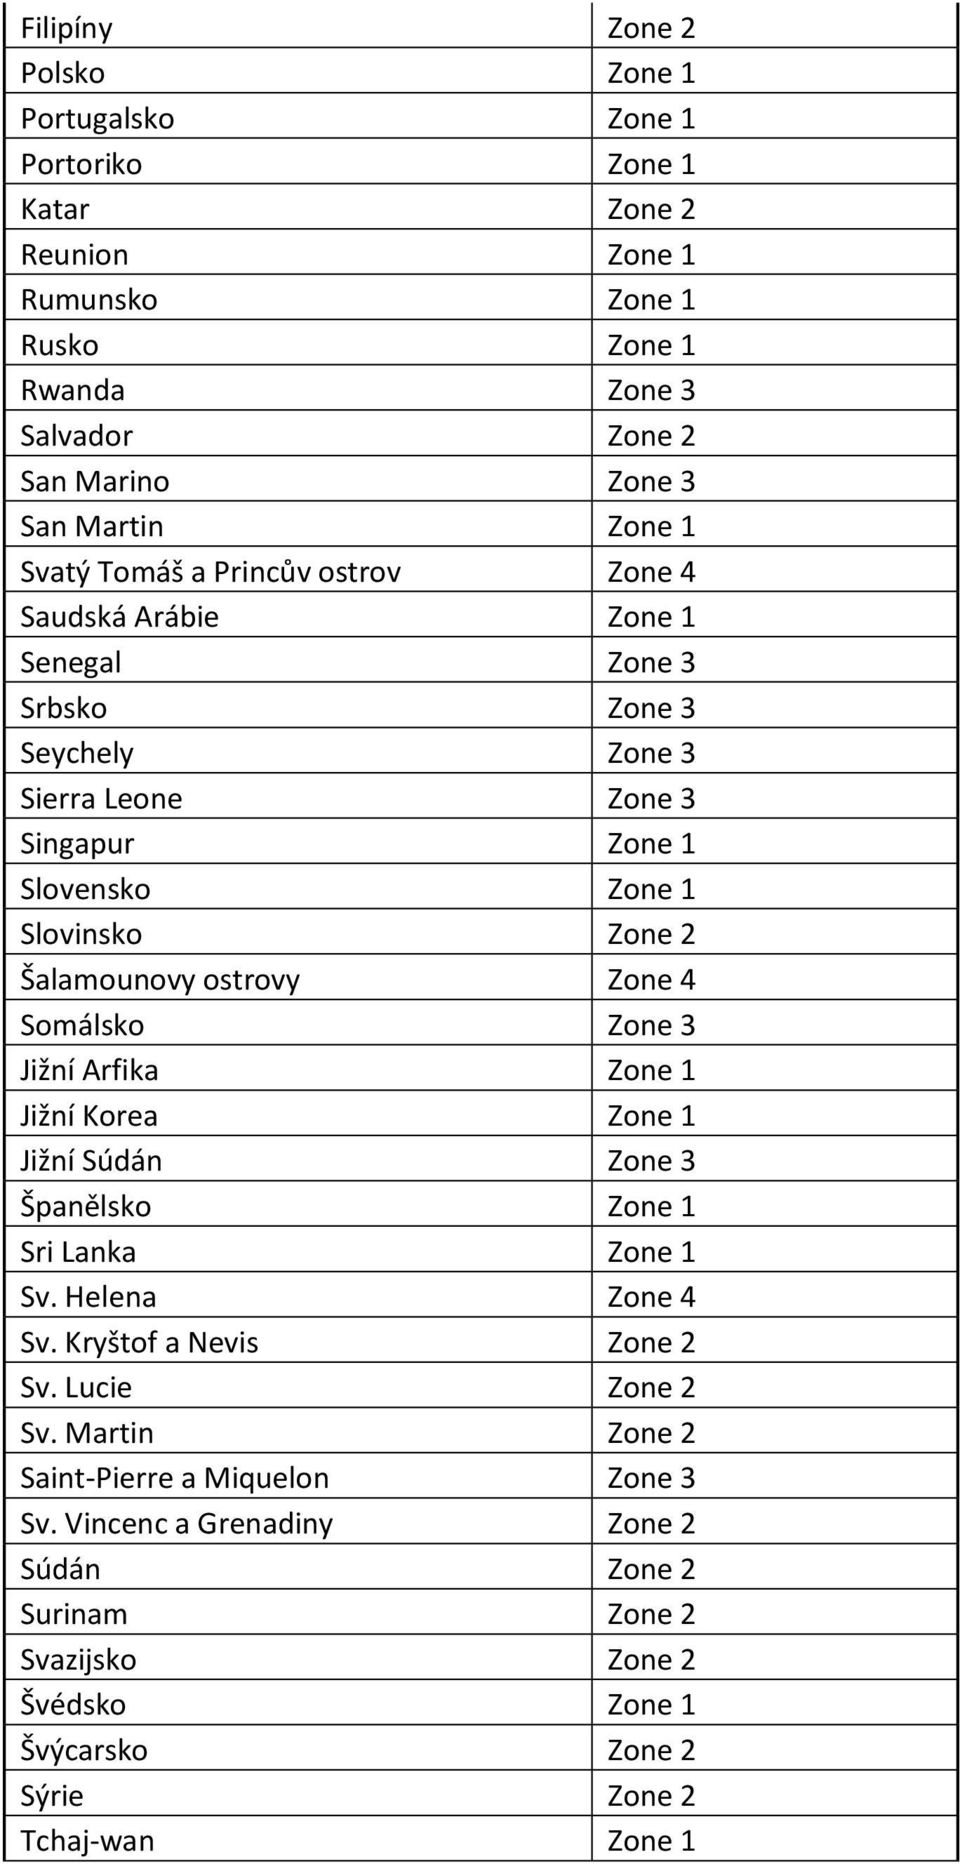 ostrovy Zone 4 Somálsko Zone 3 Jižní Arfika Zone 1 Jižní Korea Zone 1 Jižní Súdán Zone 3 Španělsko Zone 1 Sri Lanka Zone 1 Sv. Helena Zone 4 Sv. Kryštof a Nevis Zone 2 Sv.